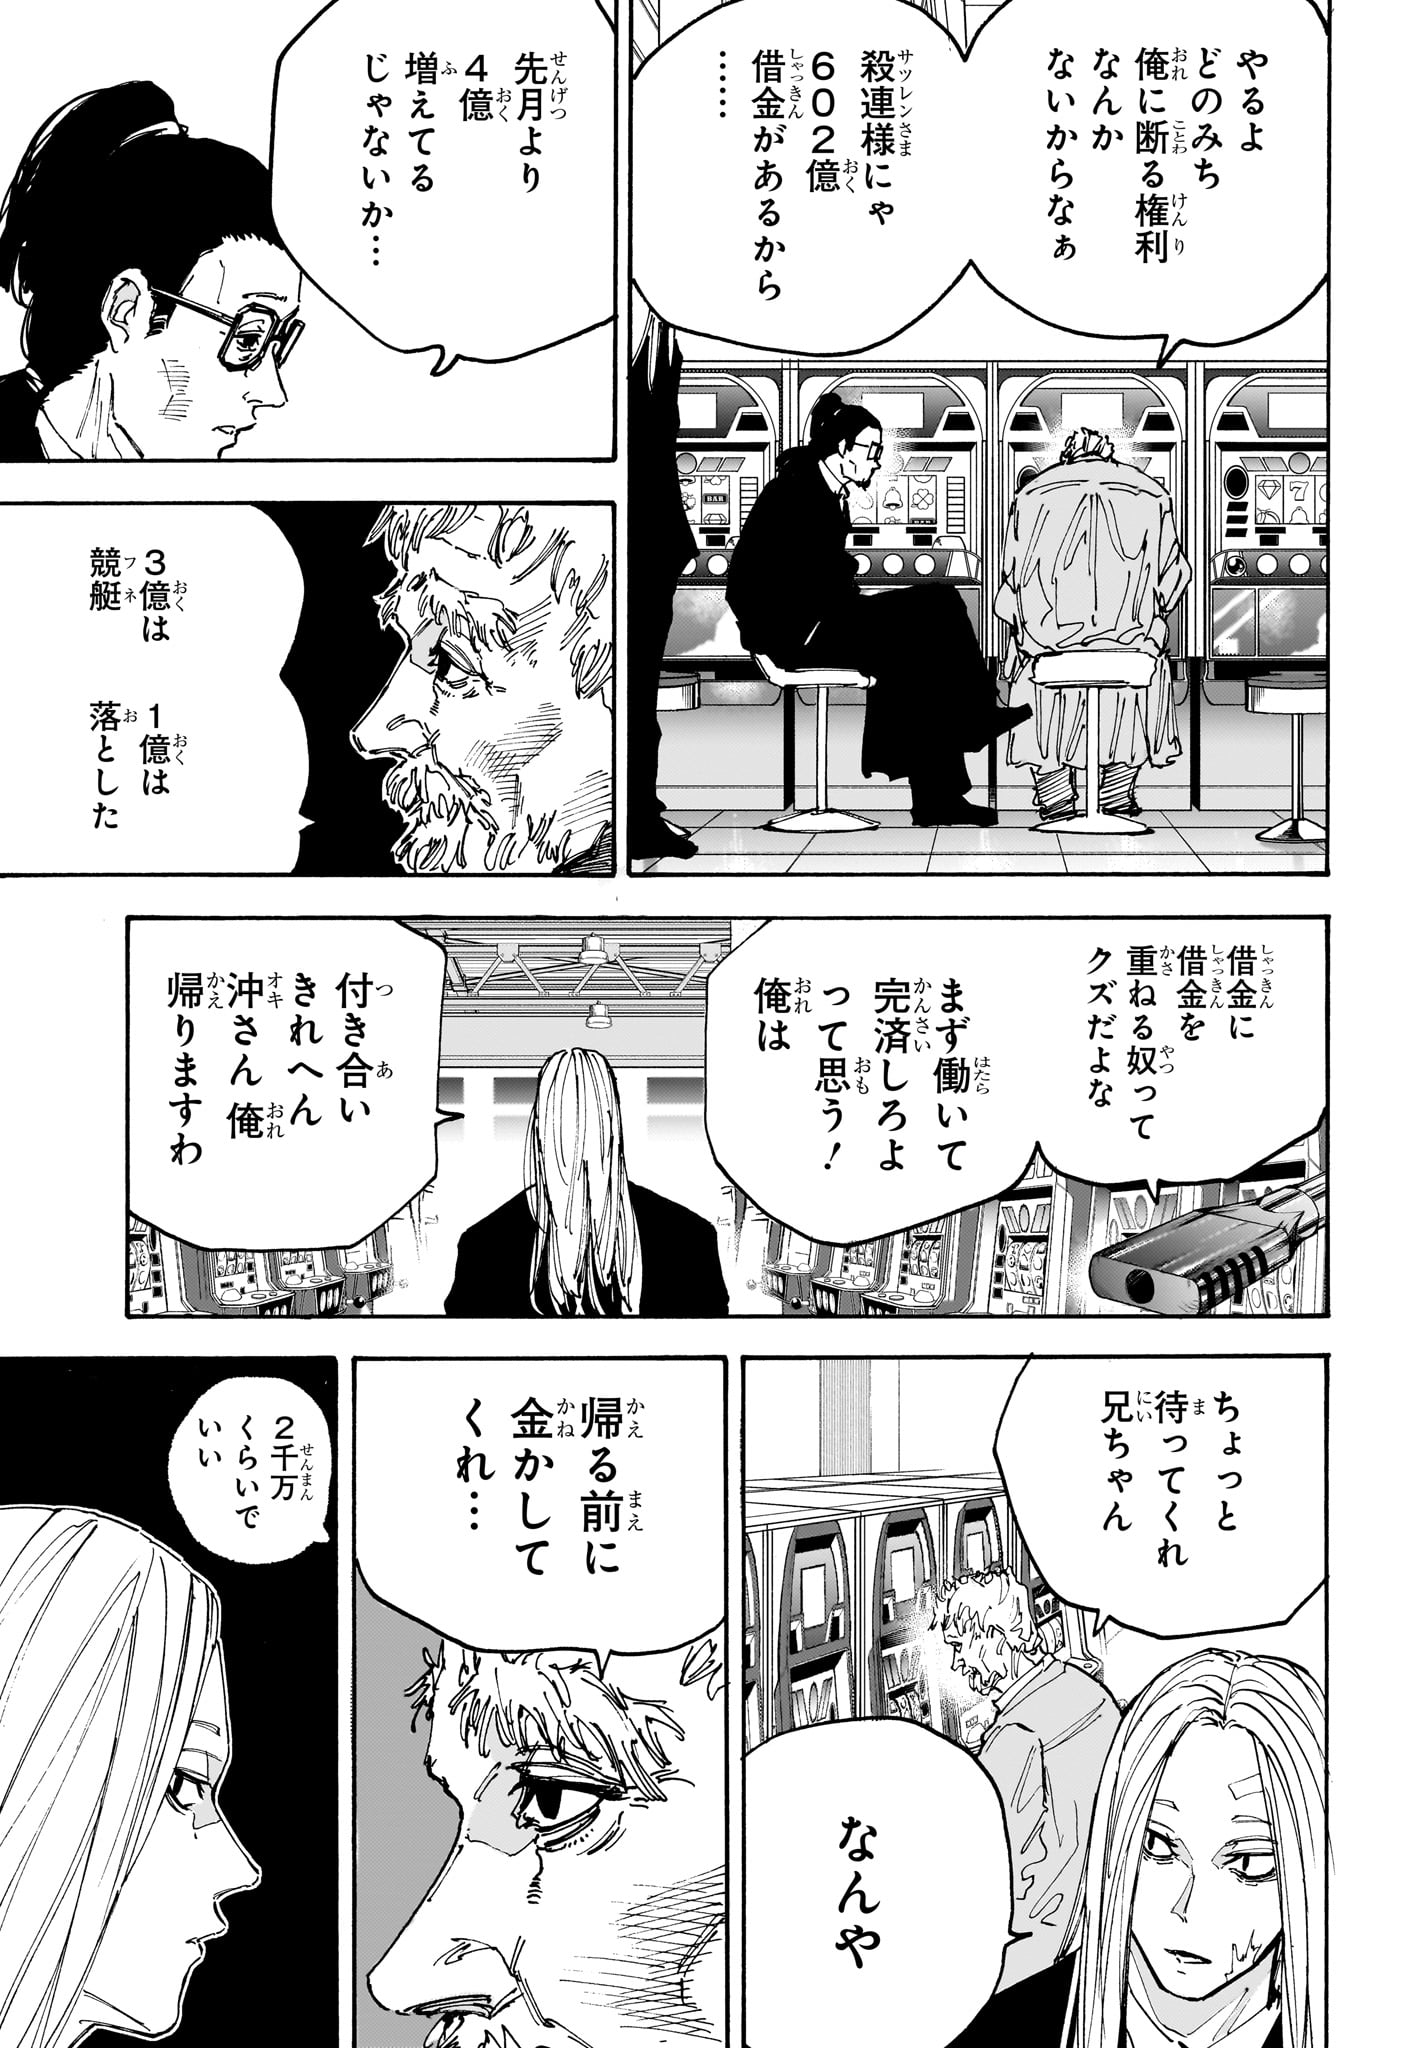 Sakamoto Days - Chapter 169 - Page 5